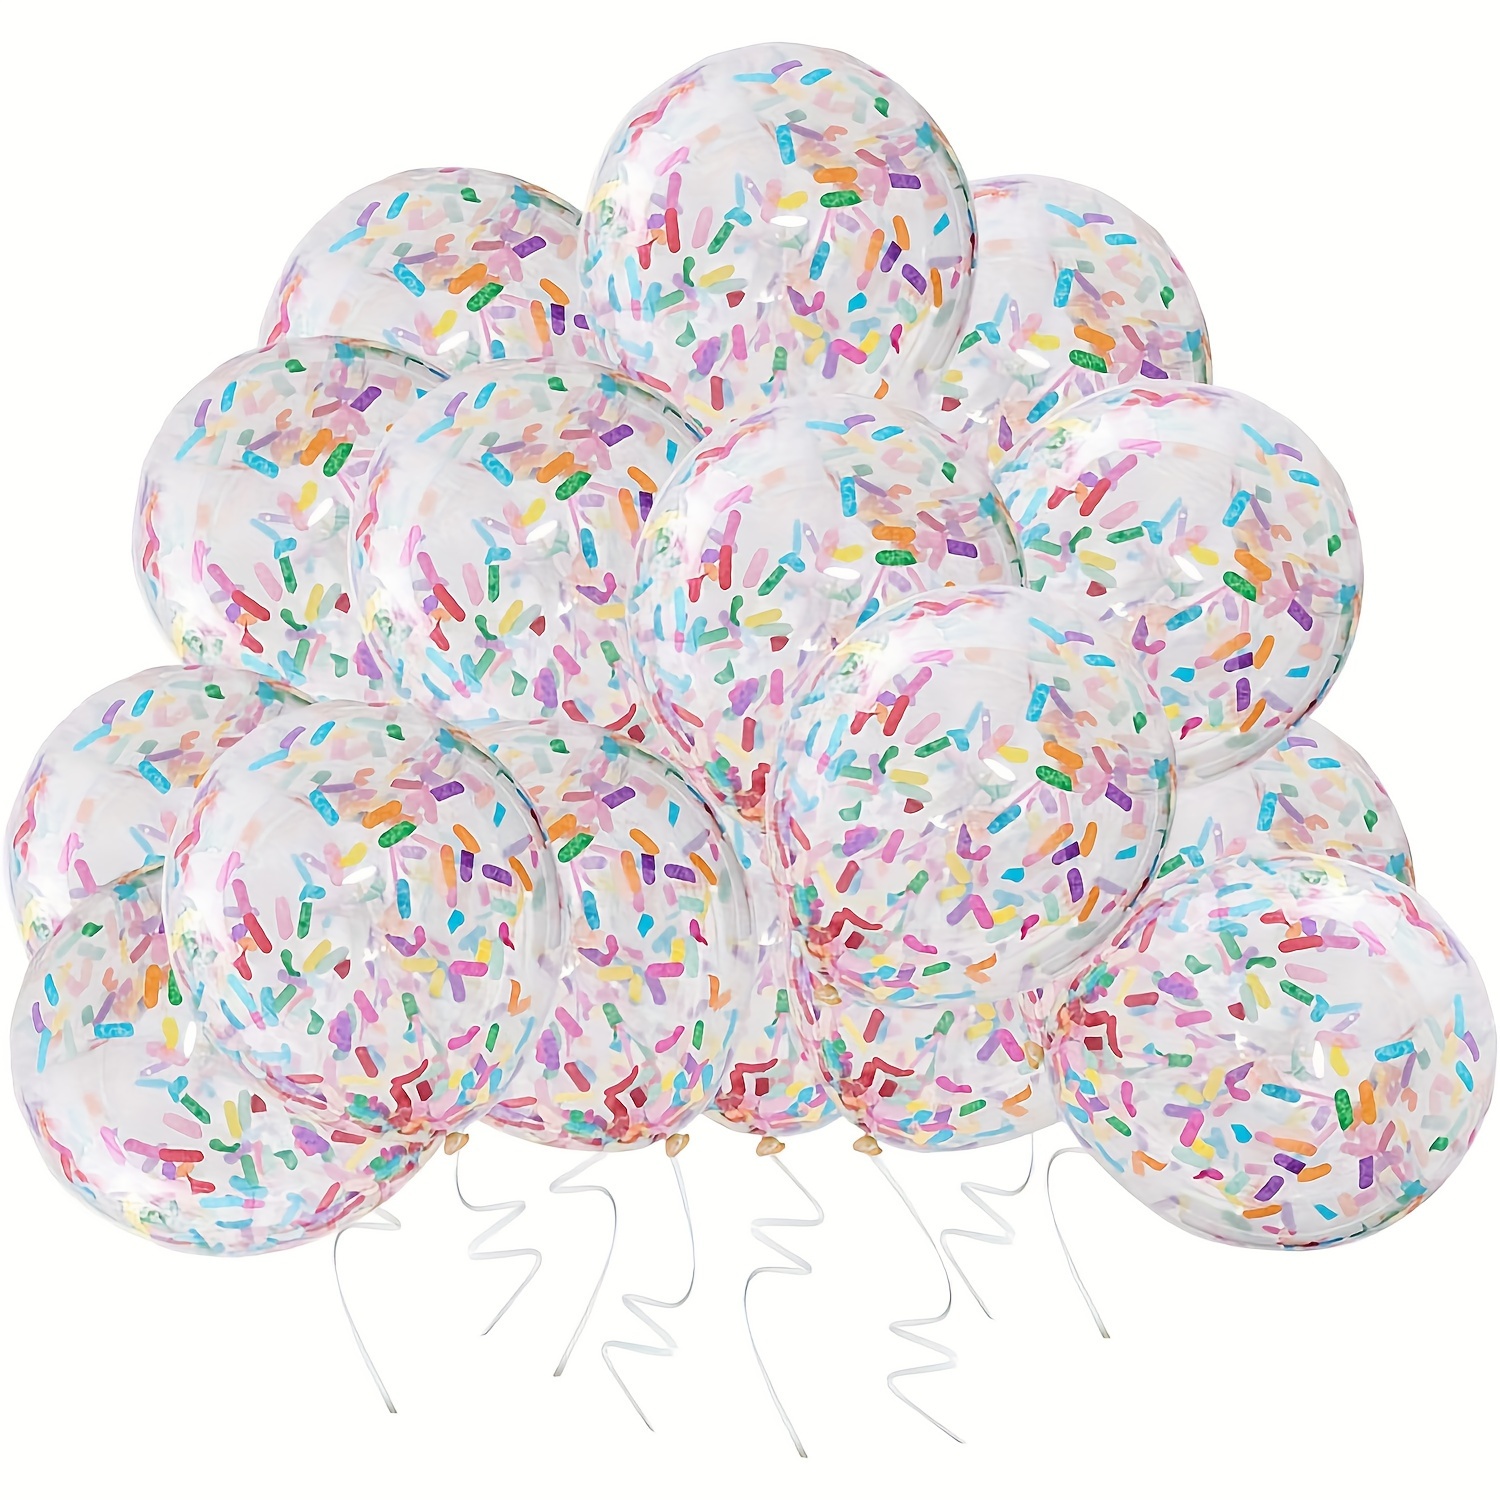 Ballon Confettis 12 Pouces En Latex À Paillettes, Décorations De Fête  Danniversaire Pour Enfants, Ballon De Mariage À Hélium, Grands Ballons  Transparents Du 0,13 €